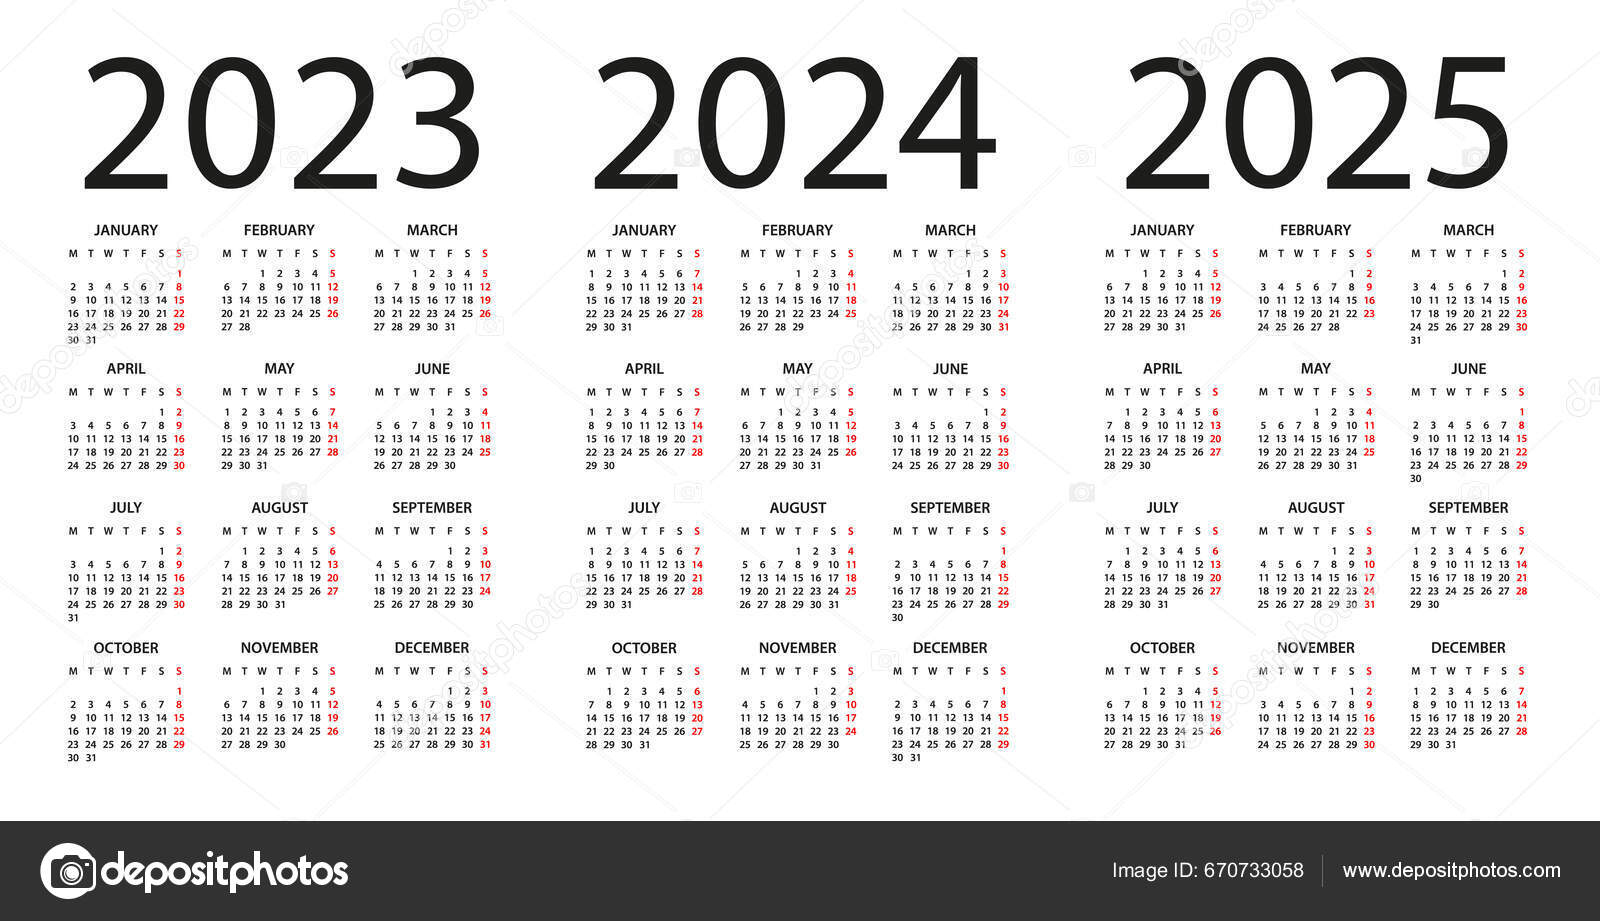 Calendário da época 2023/2024 já é conhecido